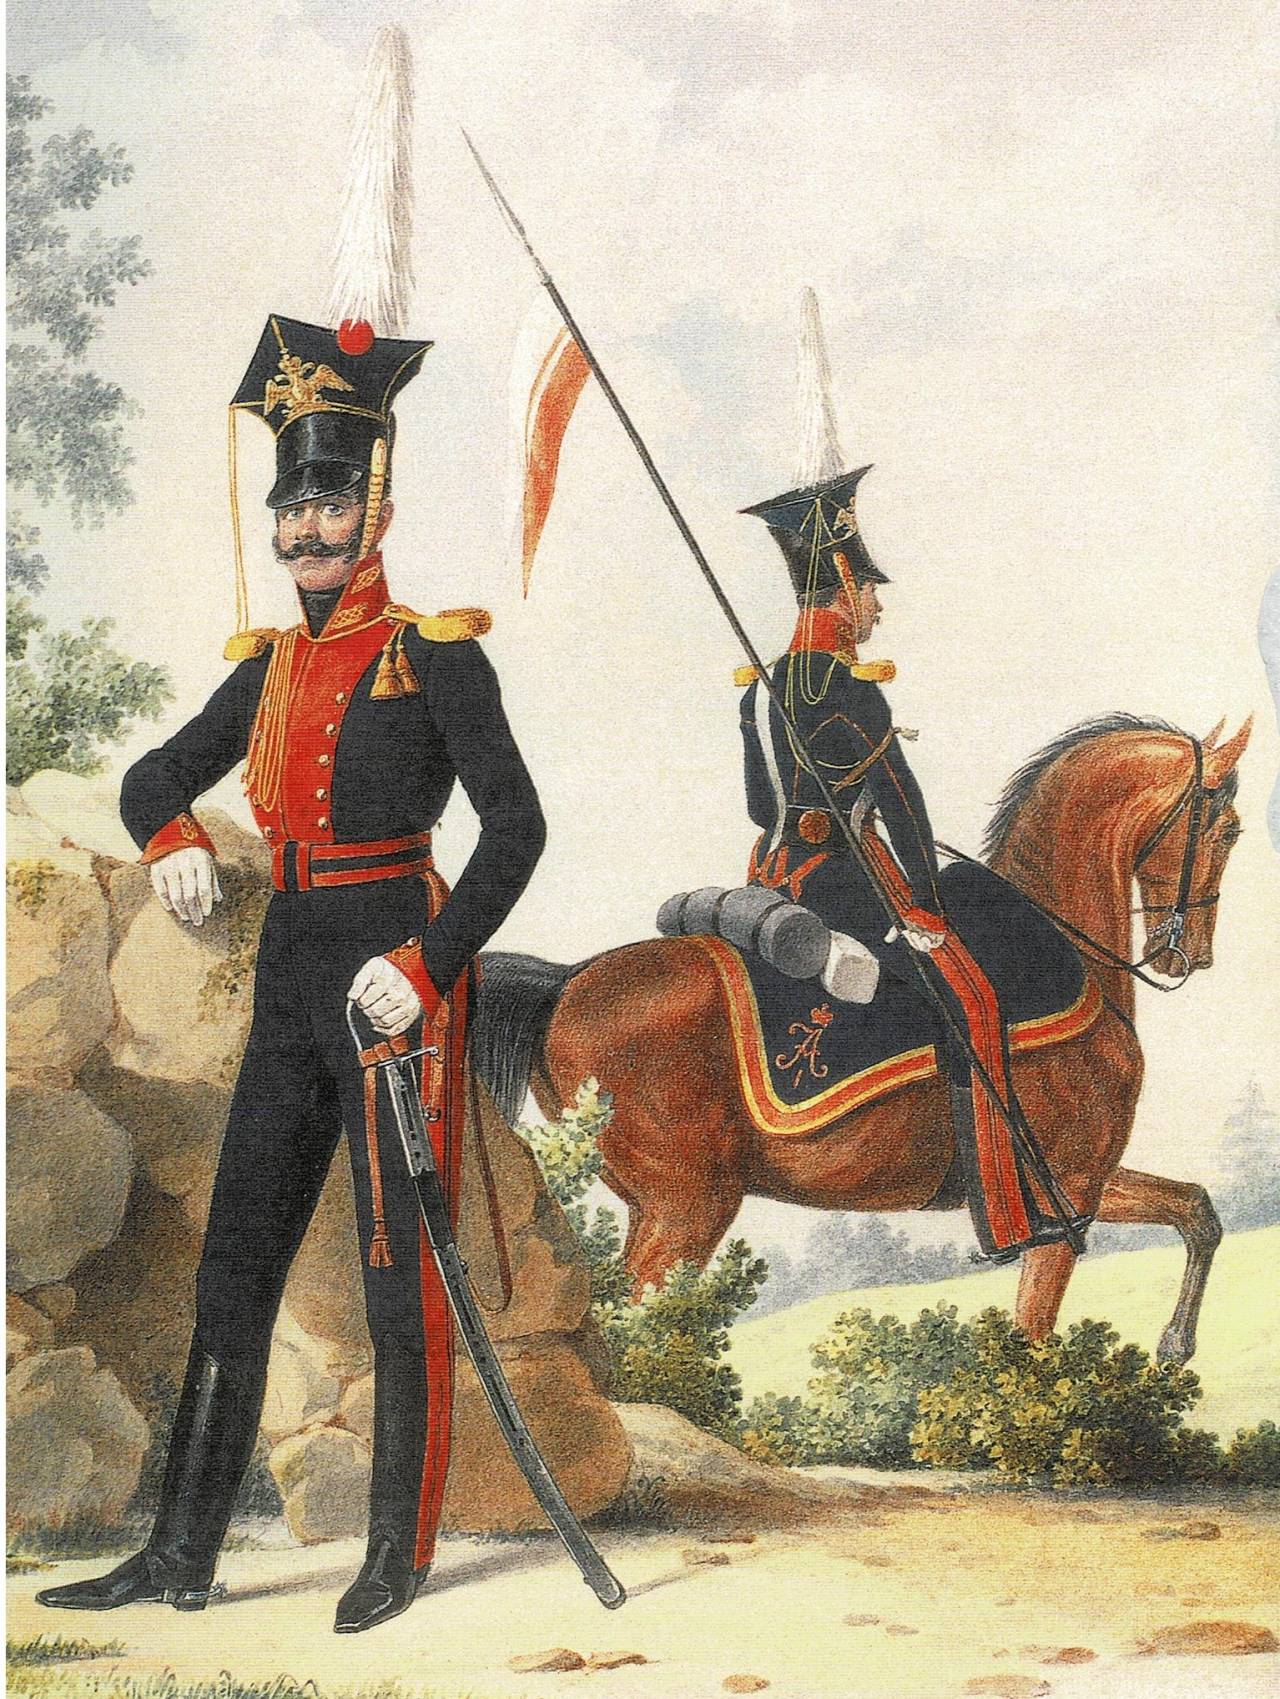 Лейб-гвардия 1812